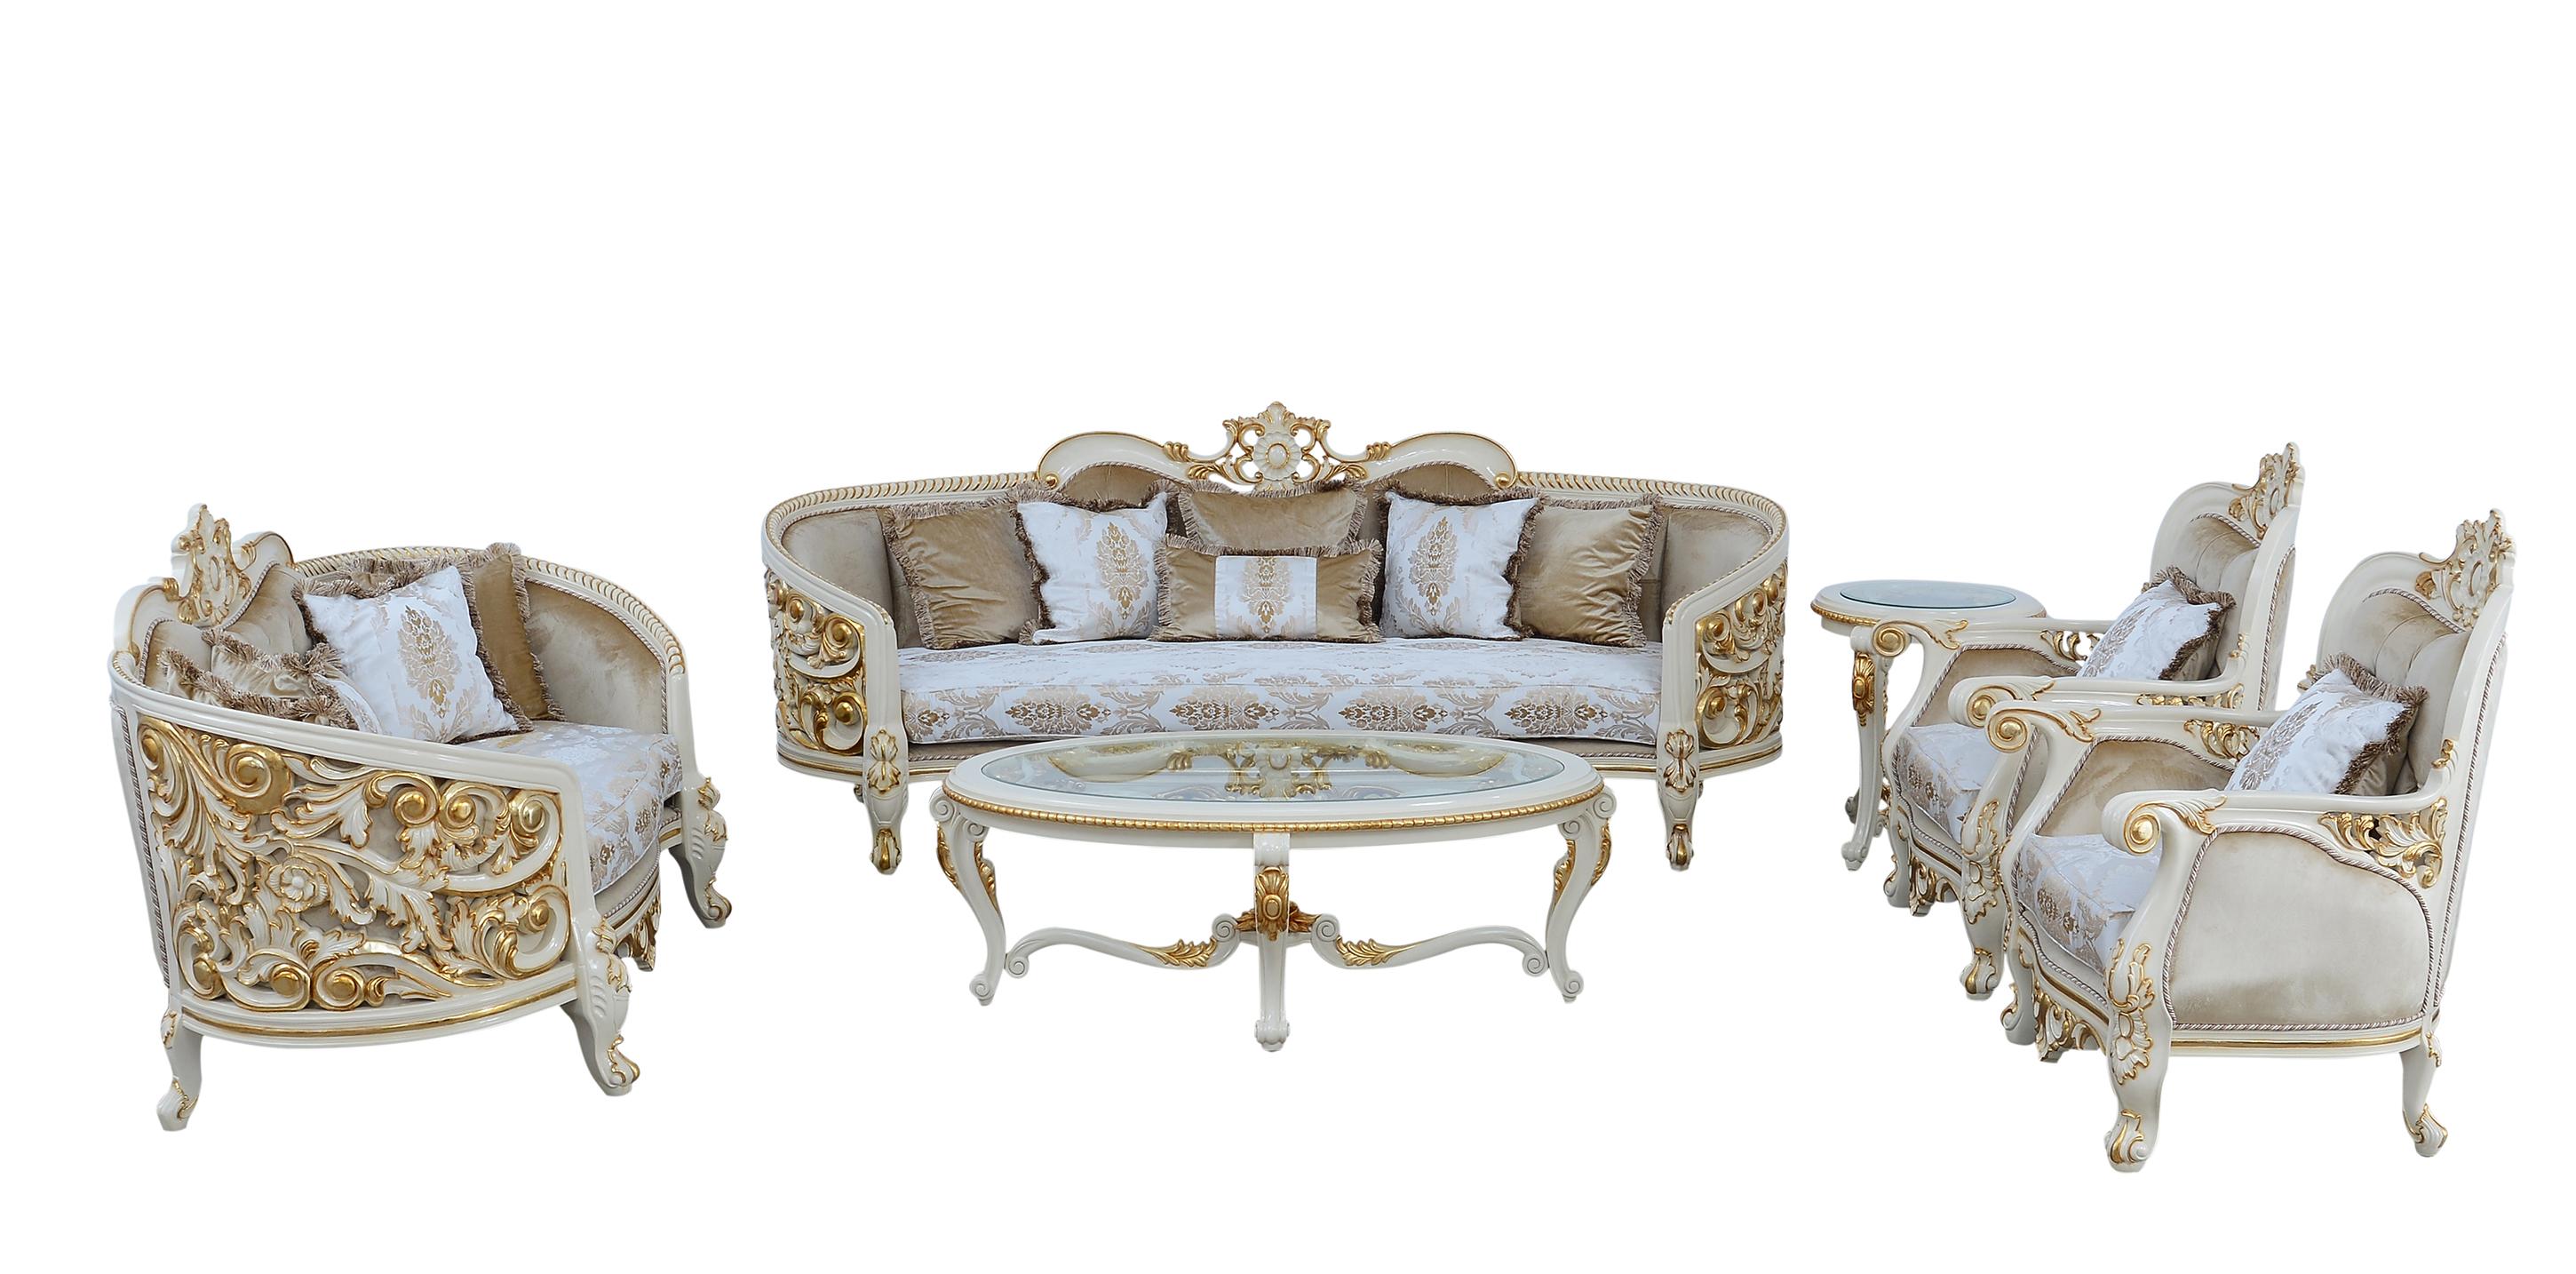 Classic, Traditional Sofa Set BELLAGIO 30017-S-Set-4 in Antique, Gold, Beige Fabric